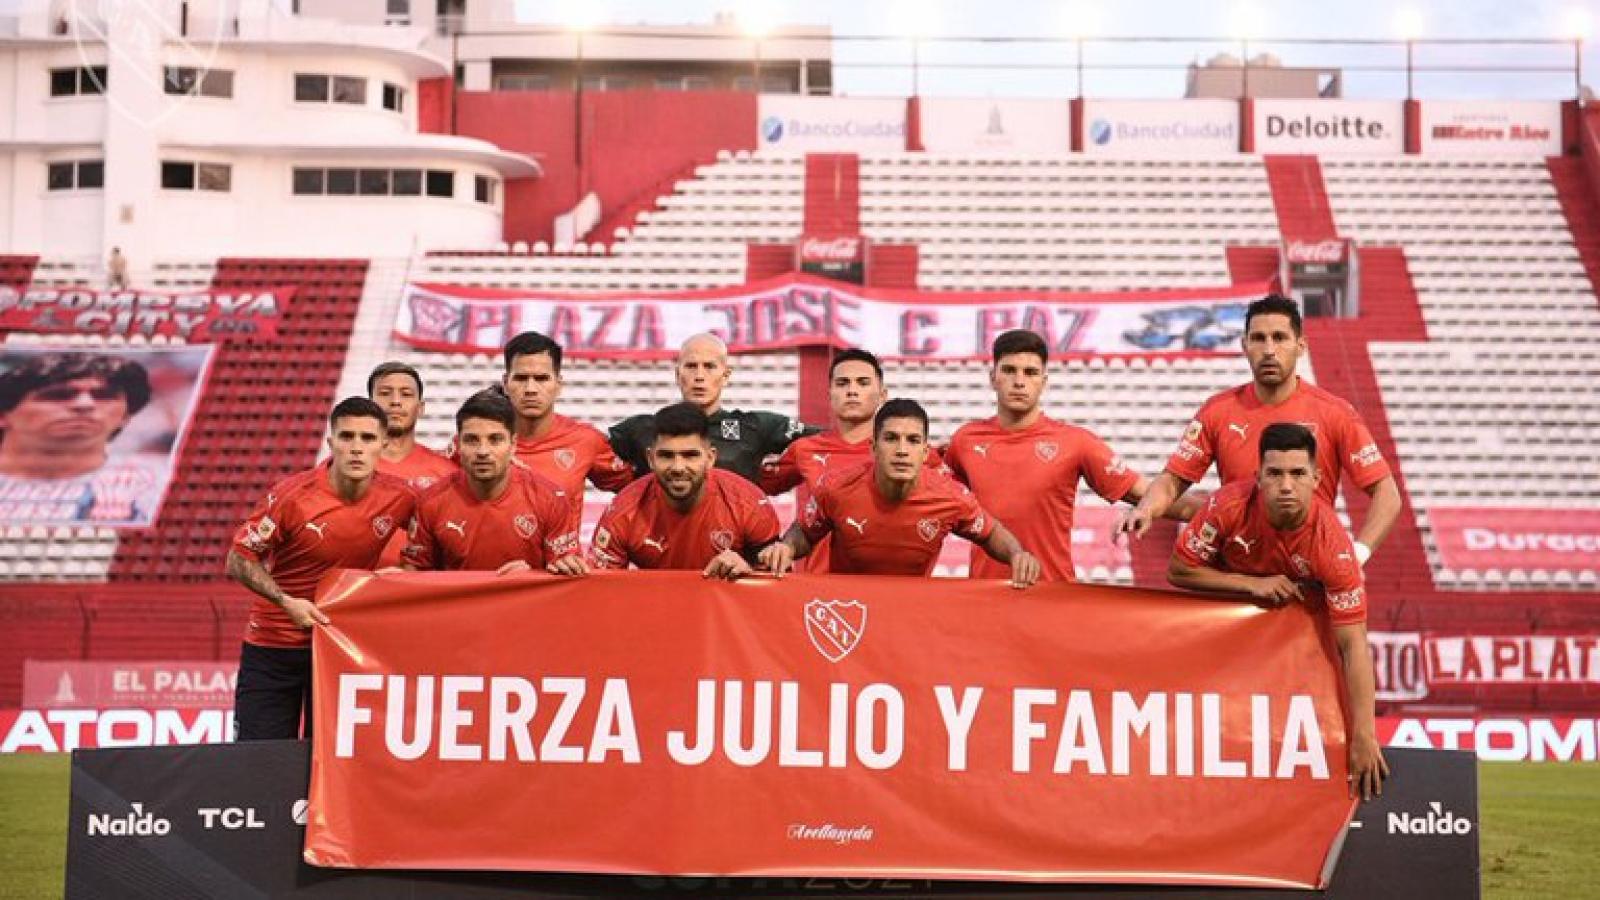 Imagen "Fuerza Julio y familia", la bandera de Independiente en apoyo a Falcioni